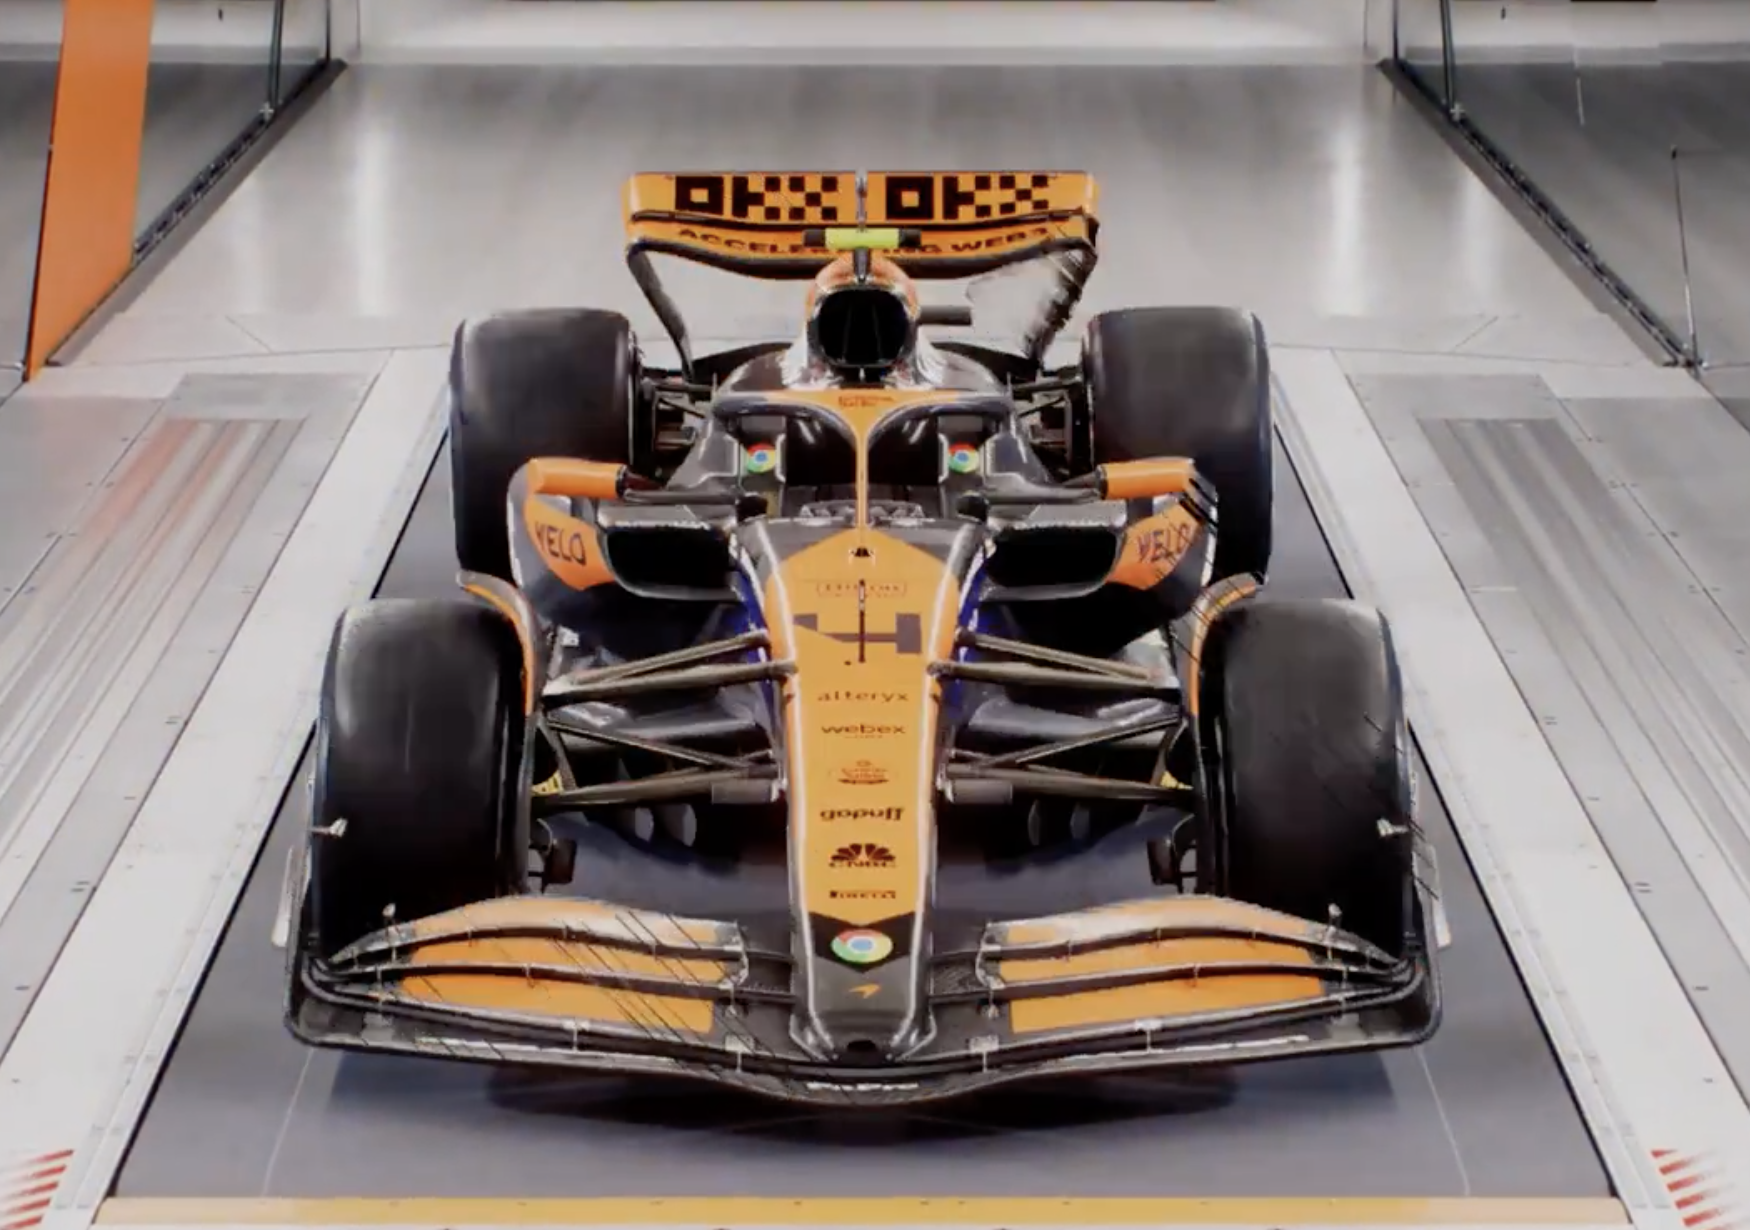 McLaren cambia la decoración de su coche para despedir a Fernando Alonso